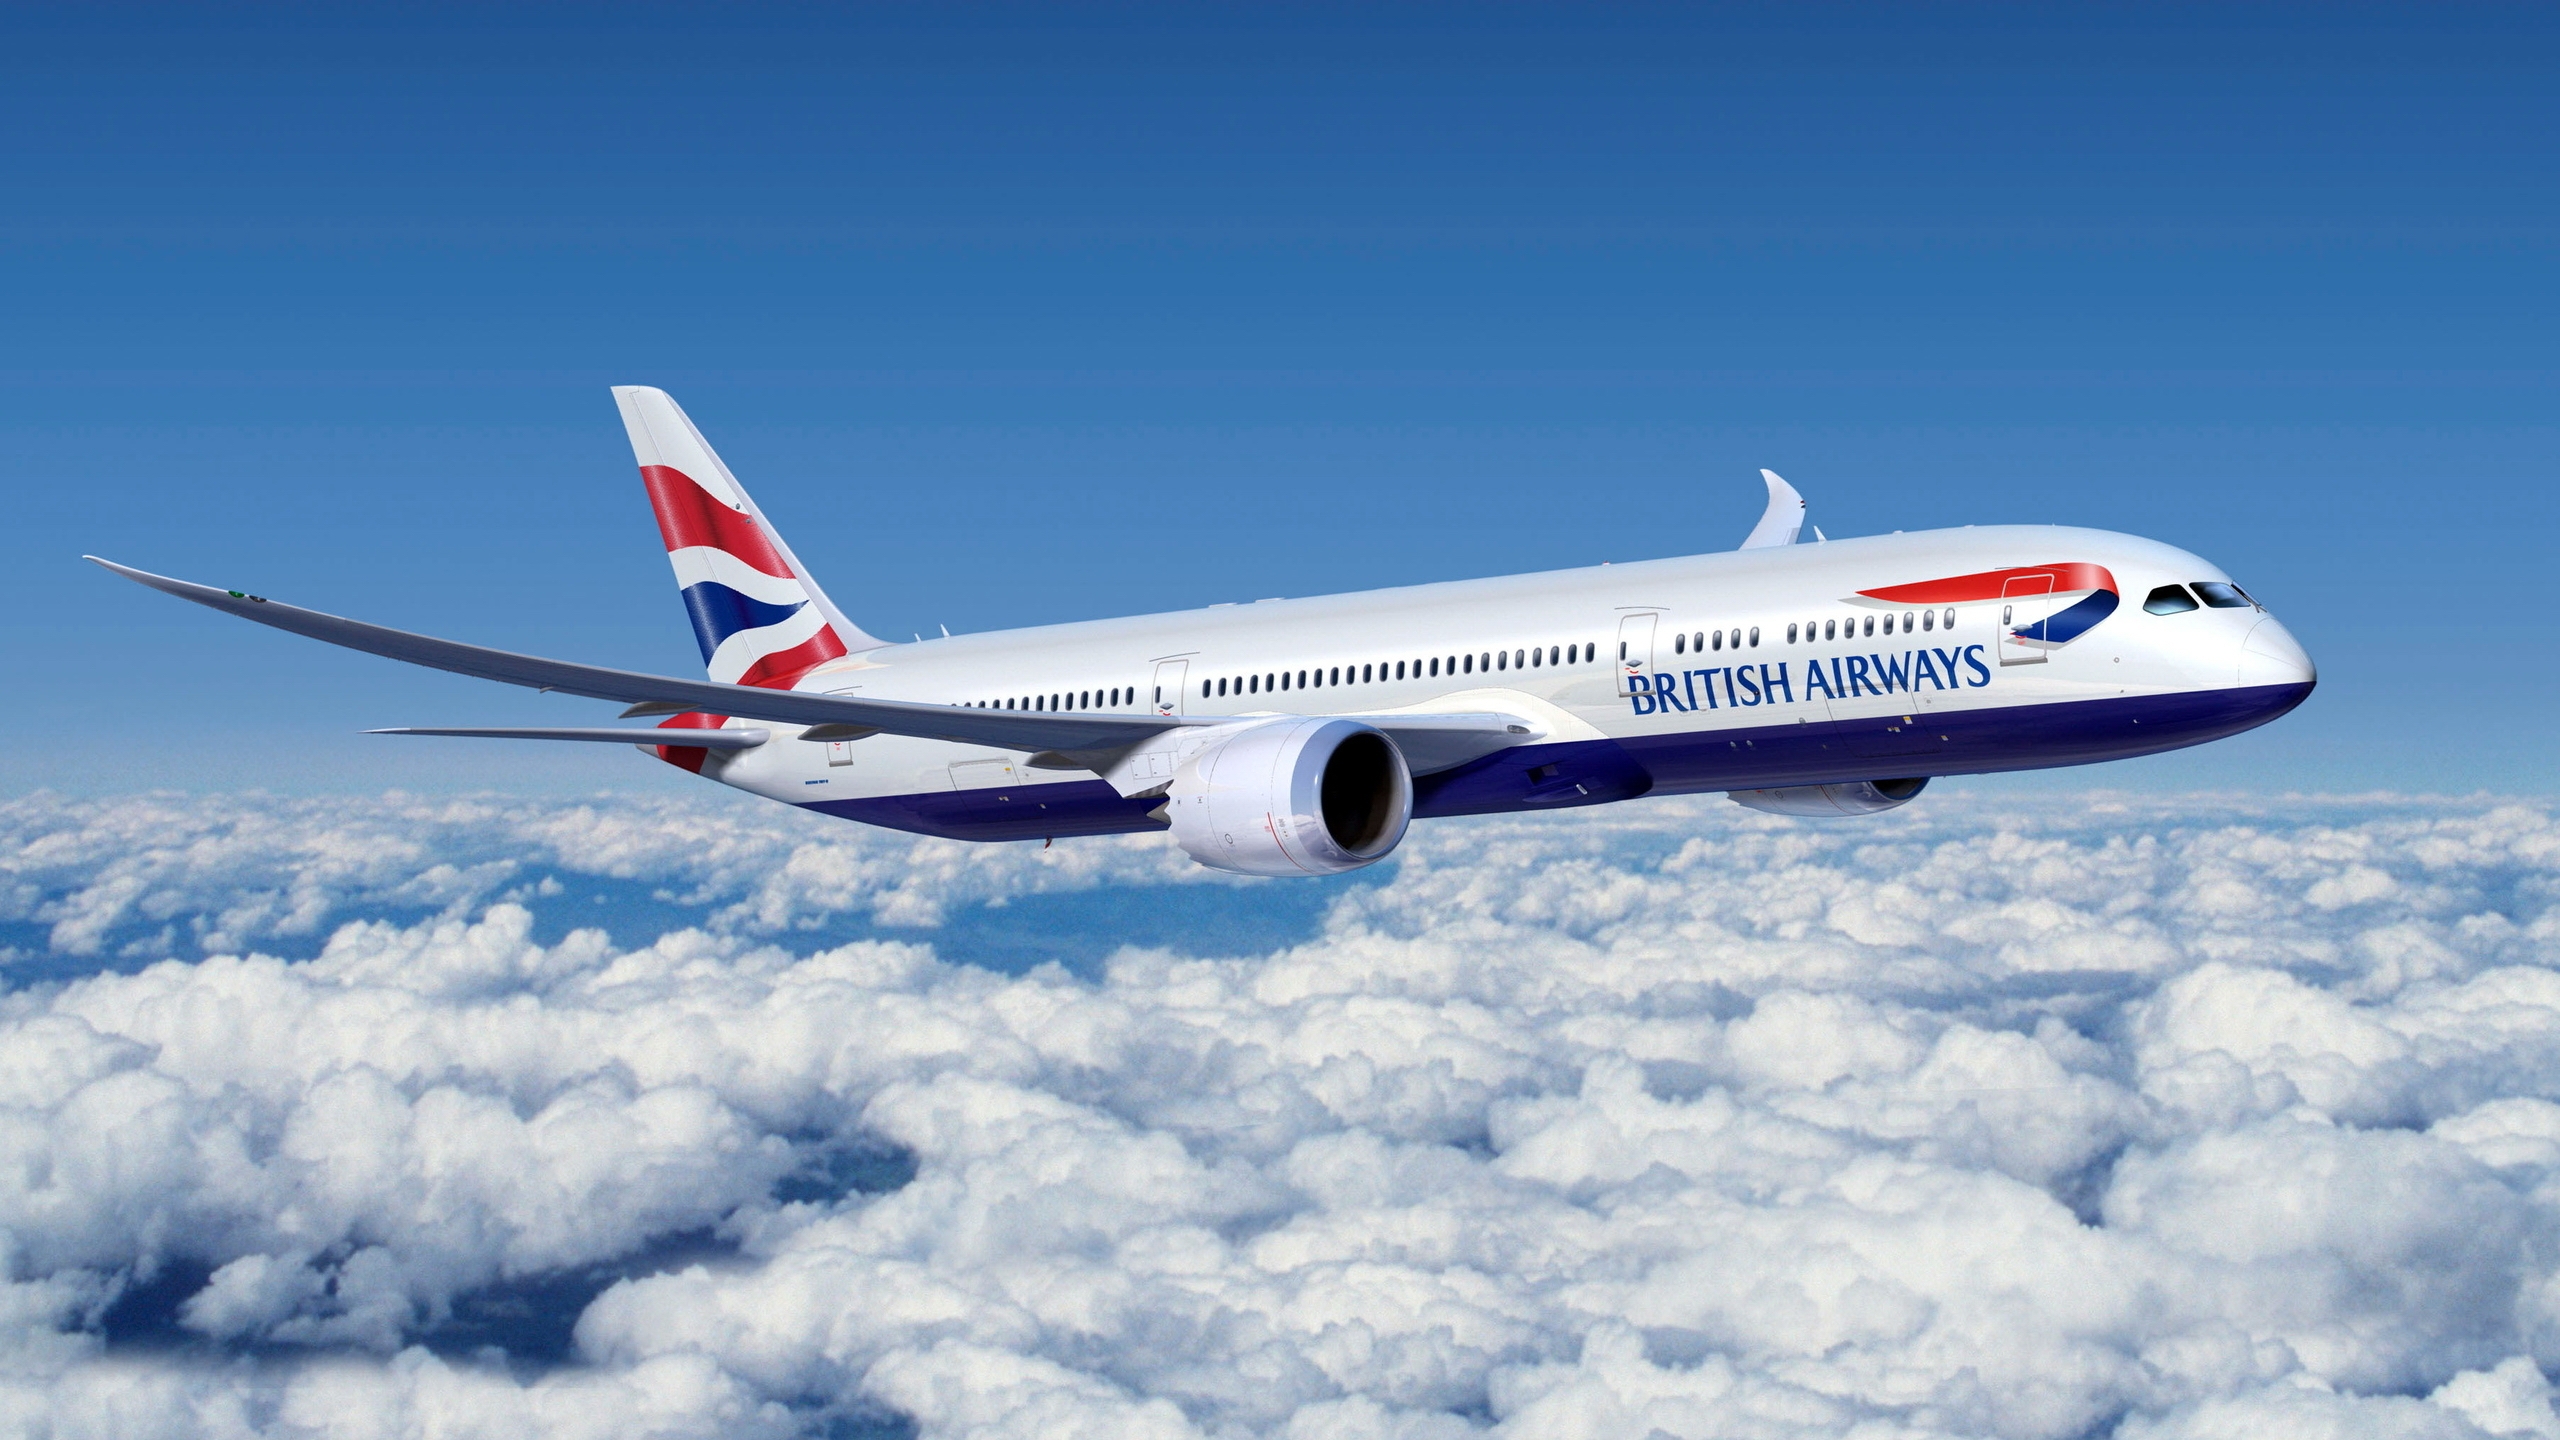 British Airways for 2560x1440 HDTV resolution